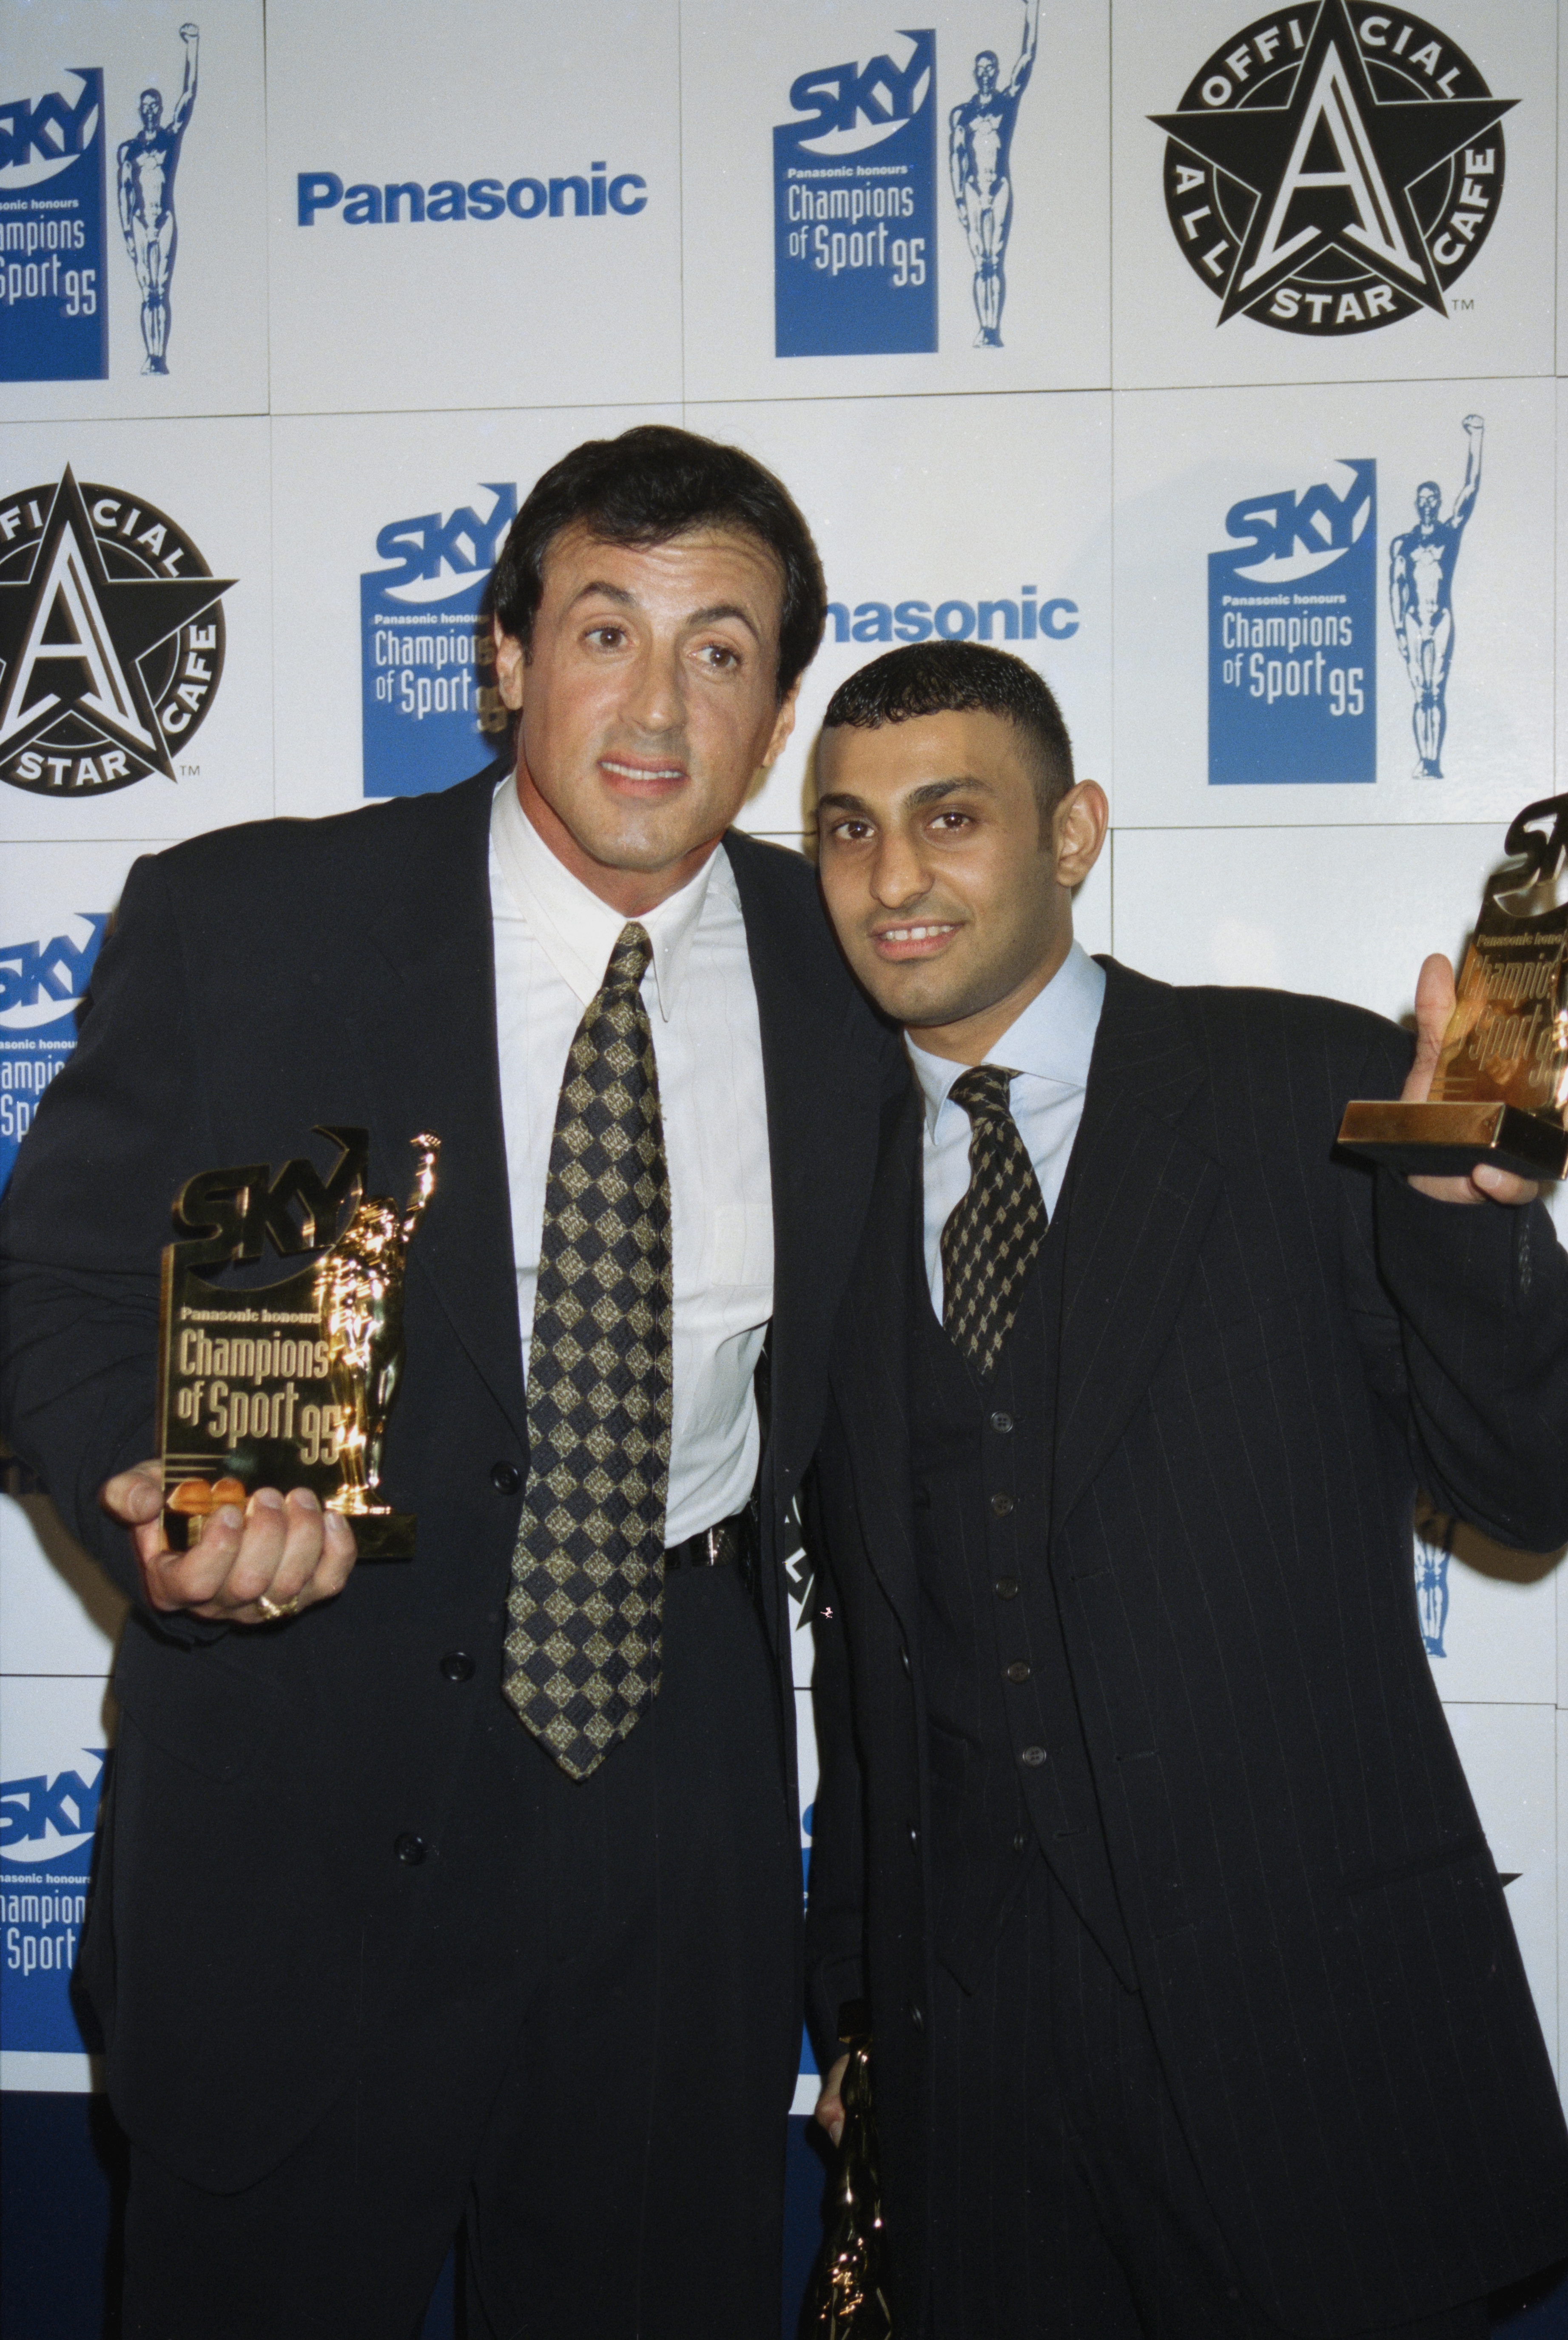 Sylvester Stallone y Naseem Hamed en el evento Sky Champions of Sport el 1 de enero de 1996 en Londres, Inglaterra. | Fuente: Getty Images